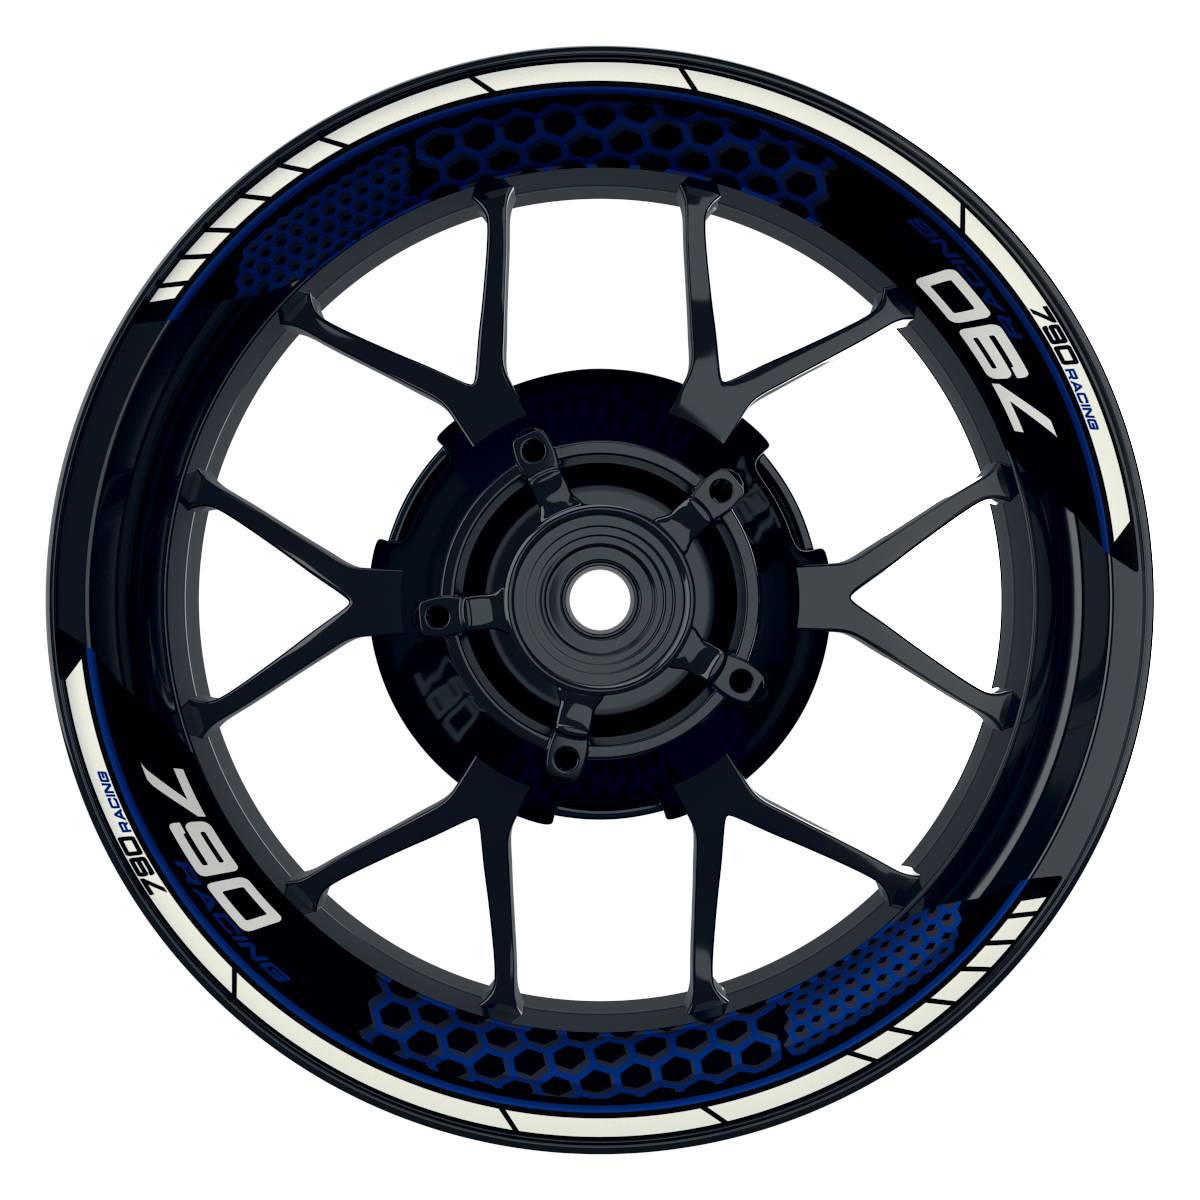 KTM Racing 790 Hexagon schwarz blau Frontansicht